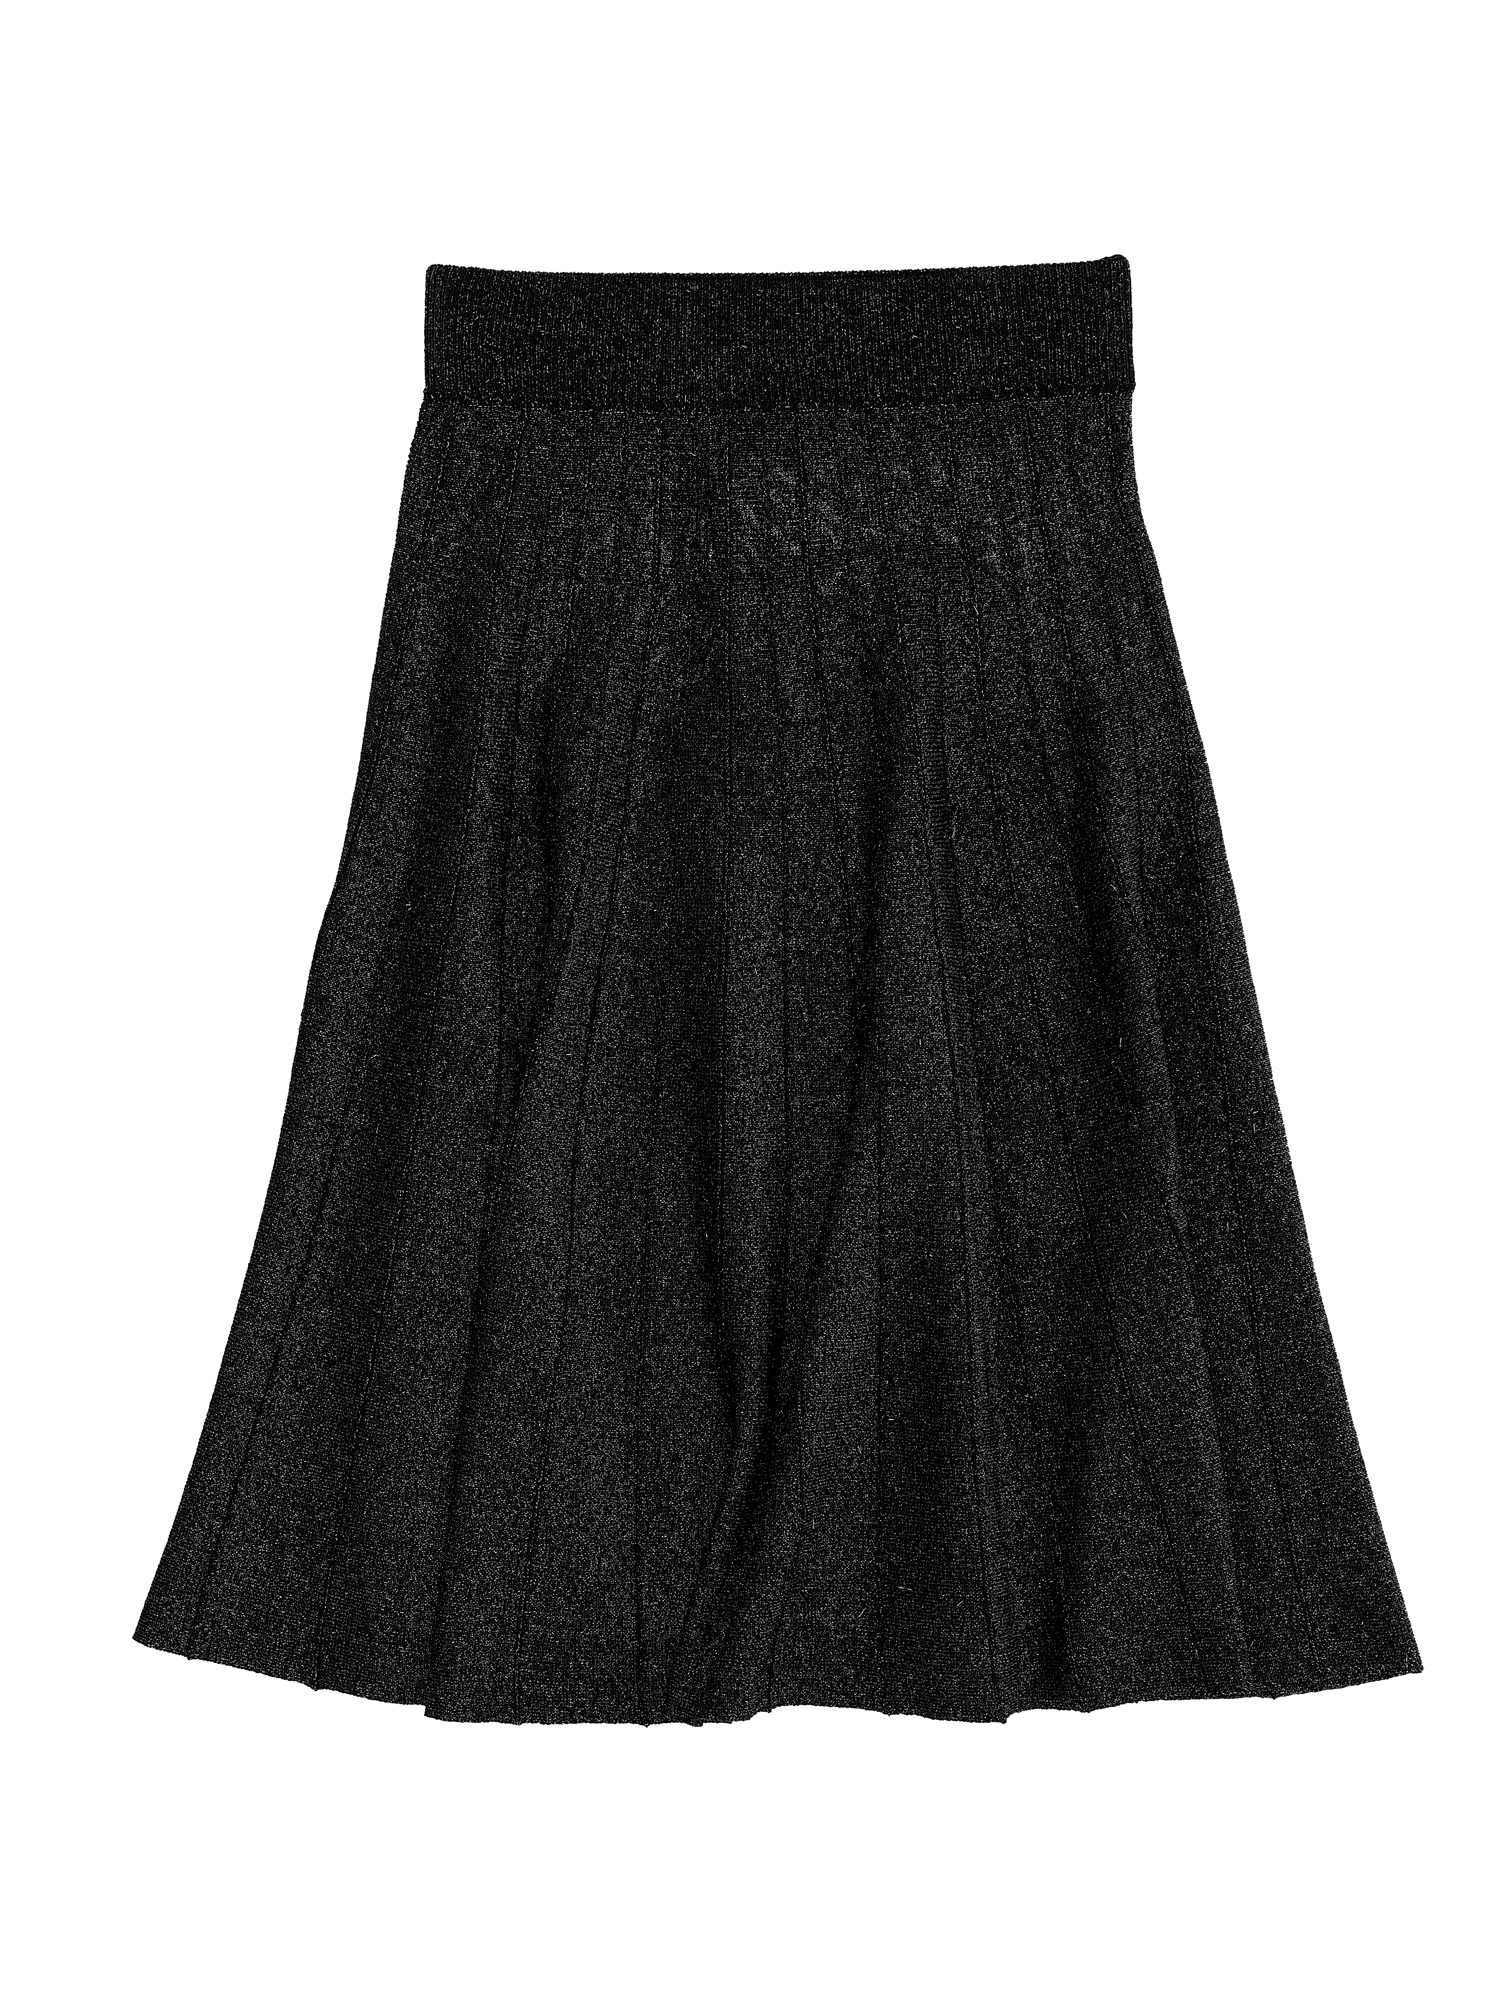 Monnalisa Lurex Knit Skirt In Black